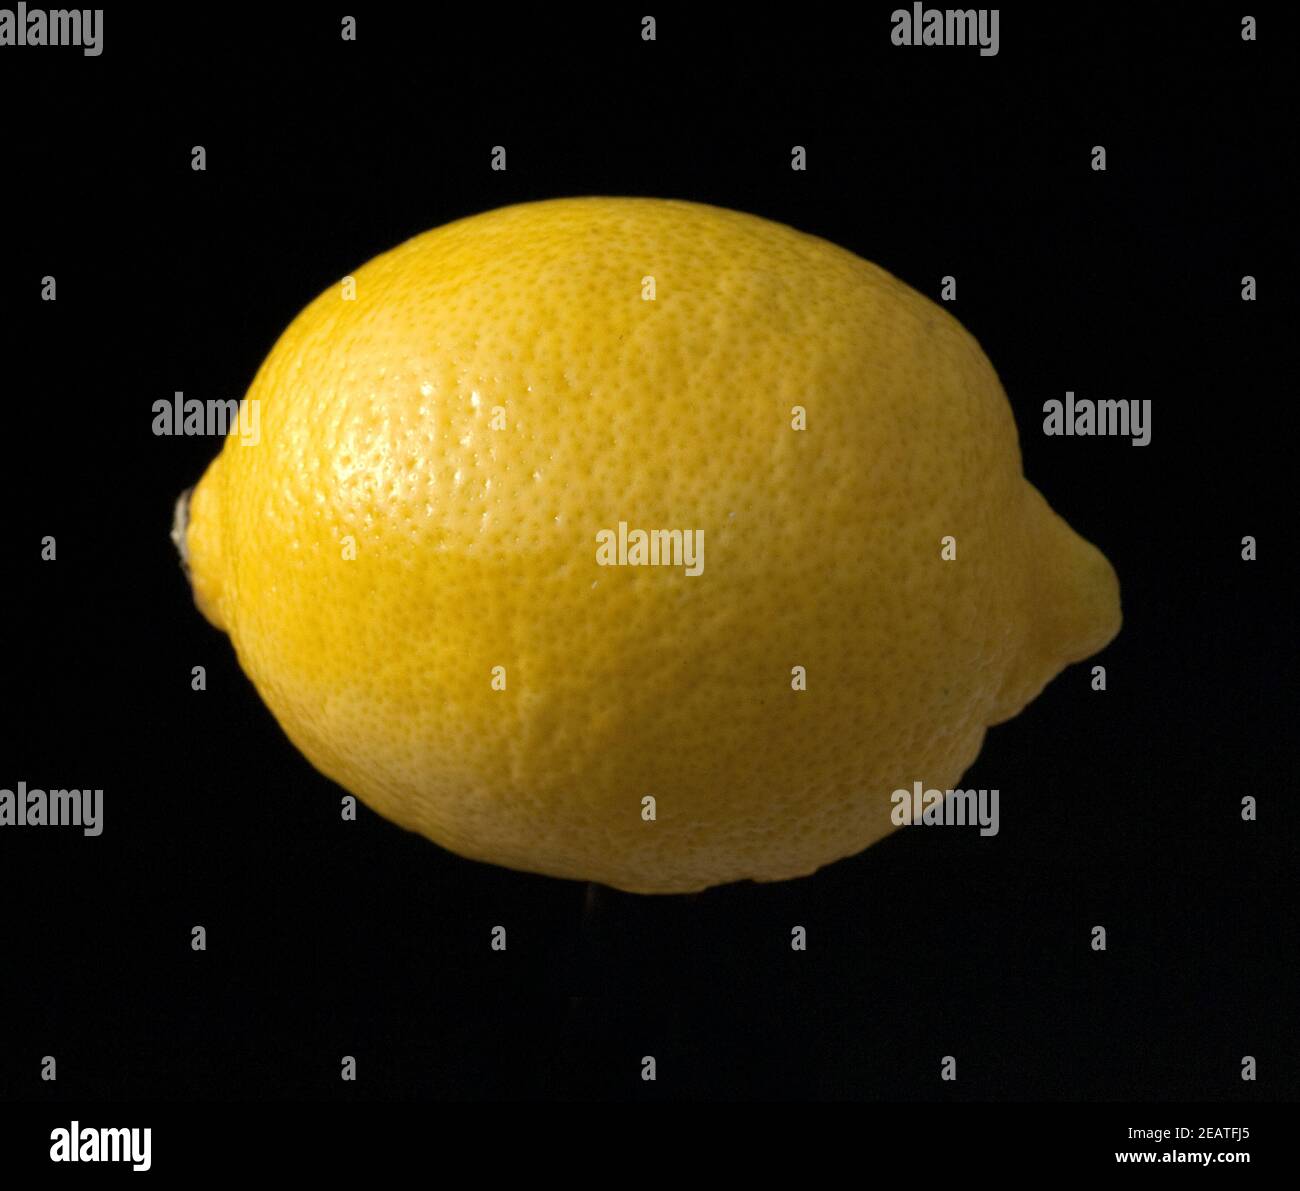 Zitrone, Citrus, limon Stock Photo